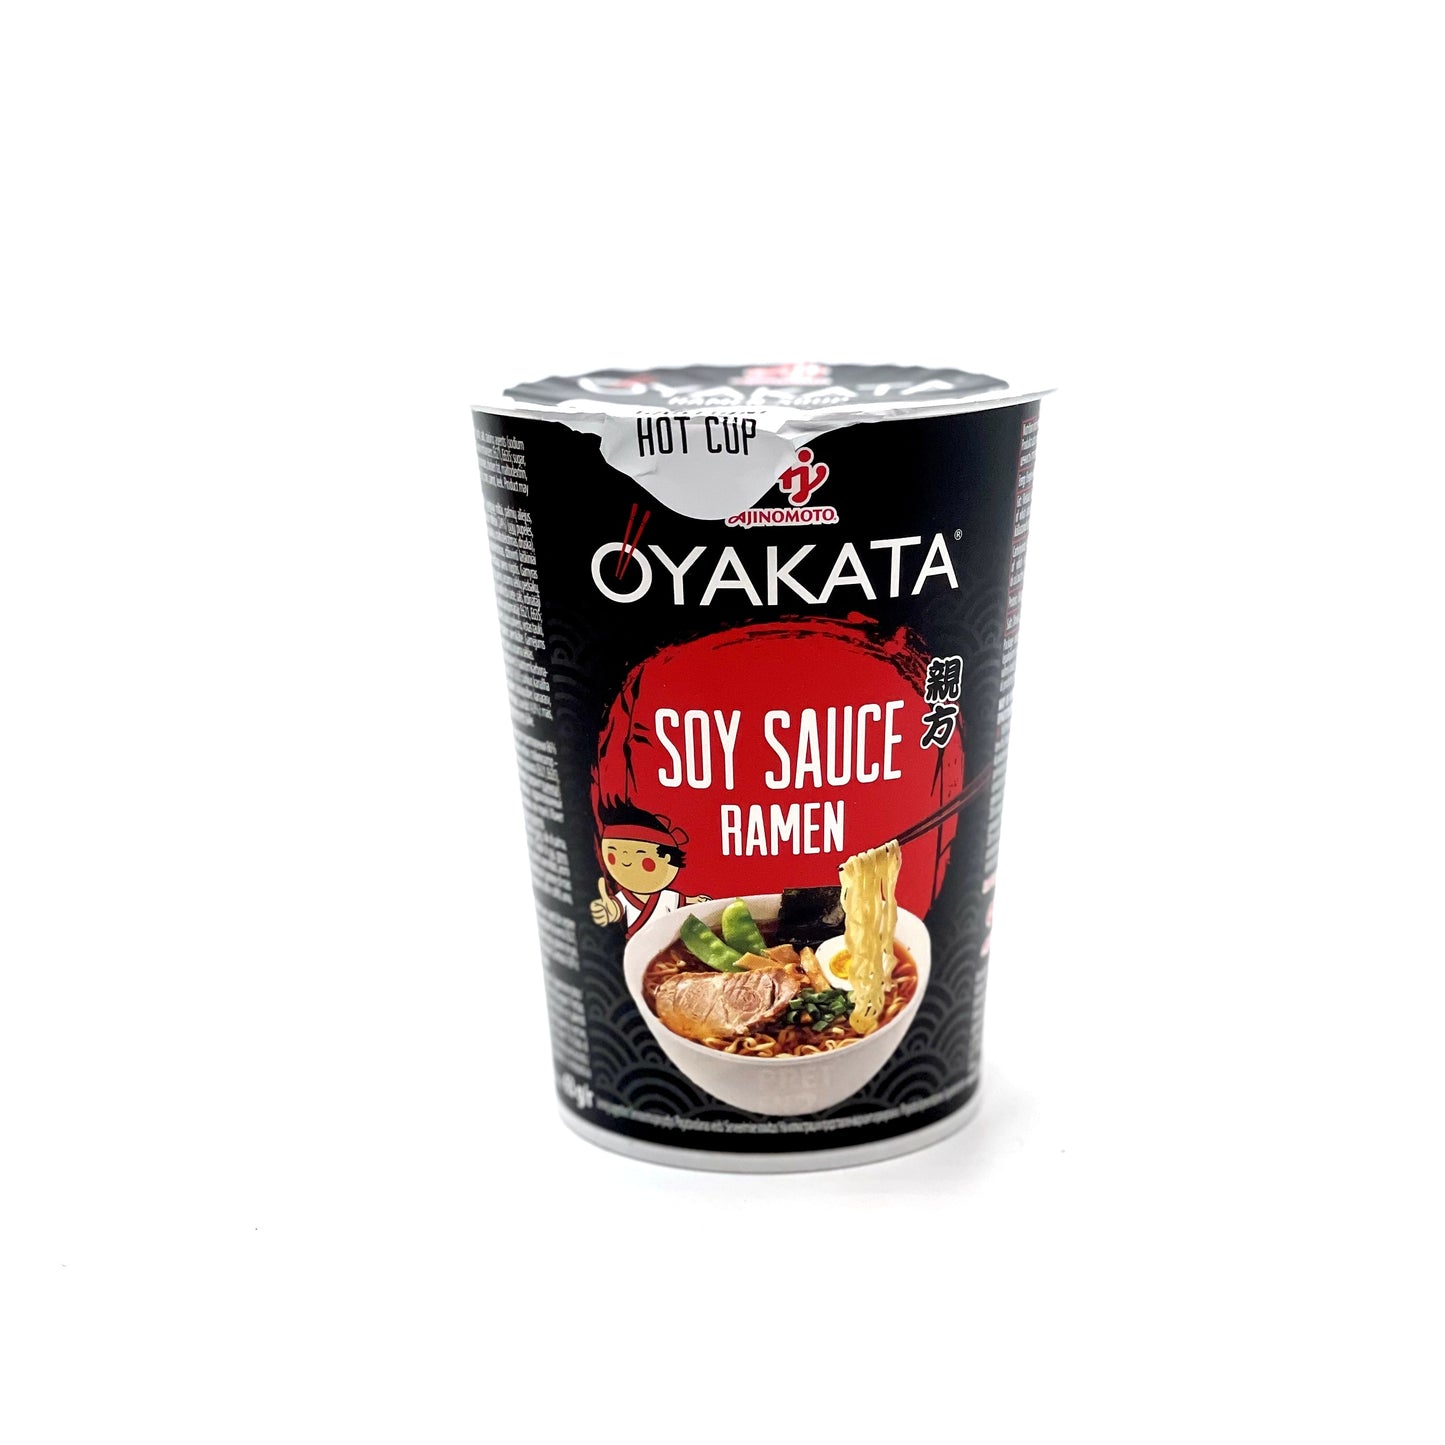 Oyakata cup soy sauce 63g 亲方酱油杯面